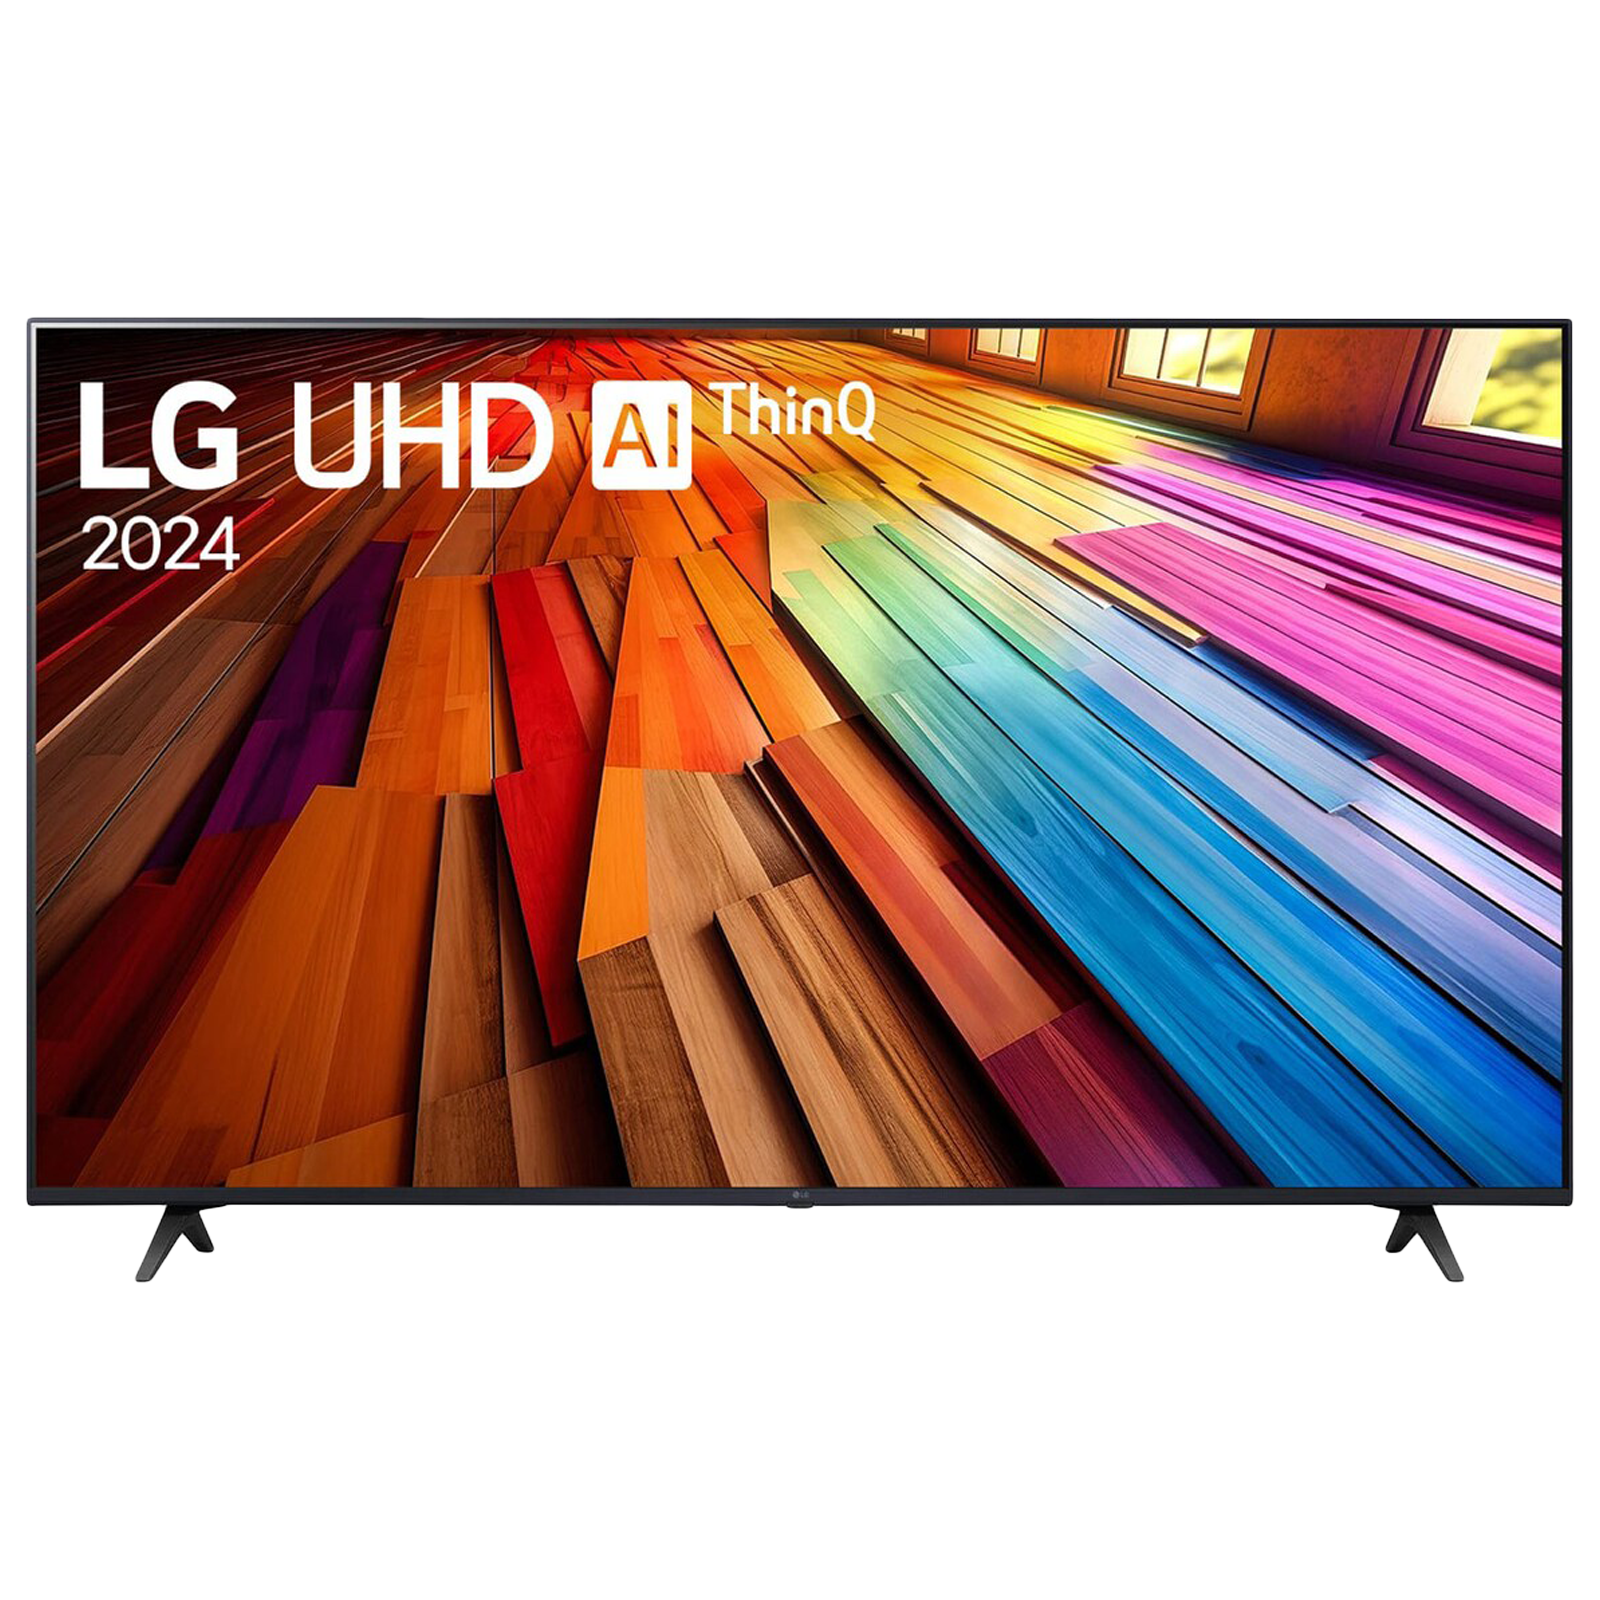 LG UT80 127 cm (50 inch) LED 4K Ultra HD WebOS TV with Filmmaker Mode (2024 model)